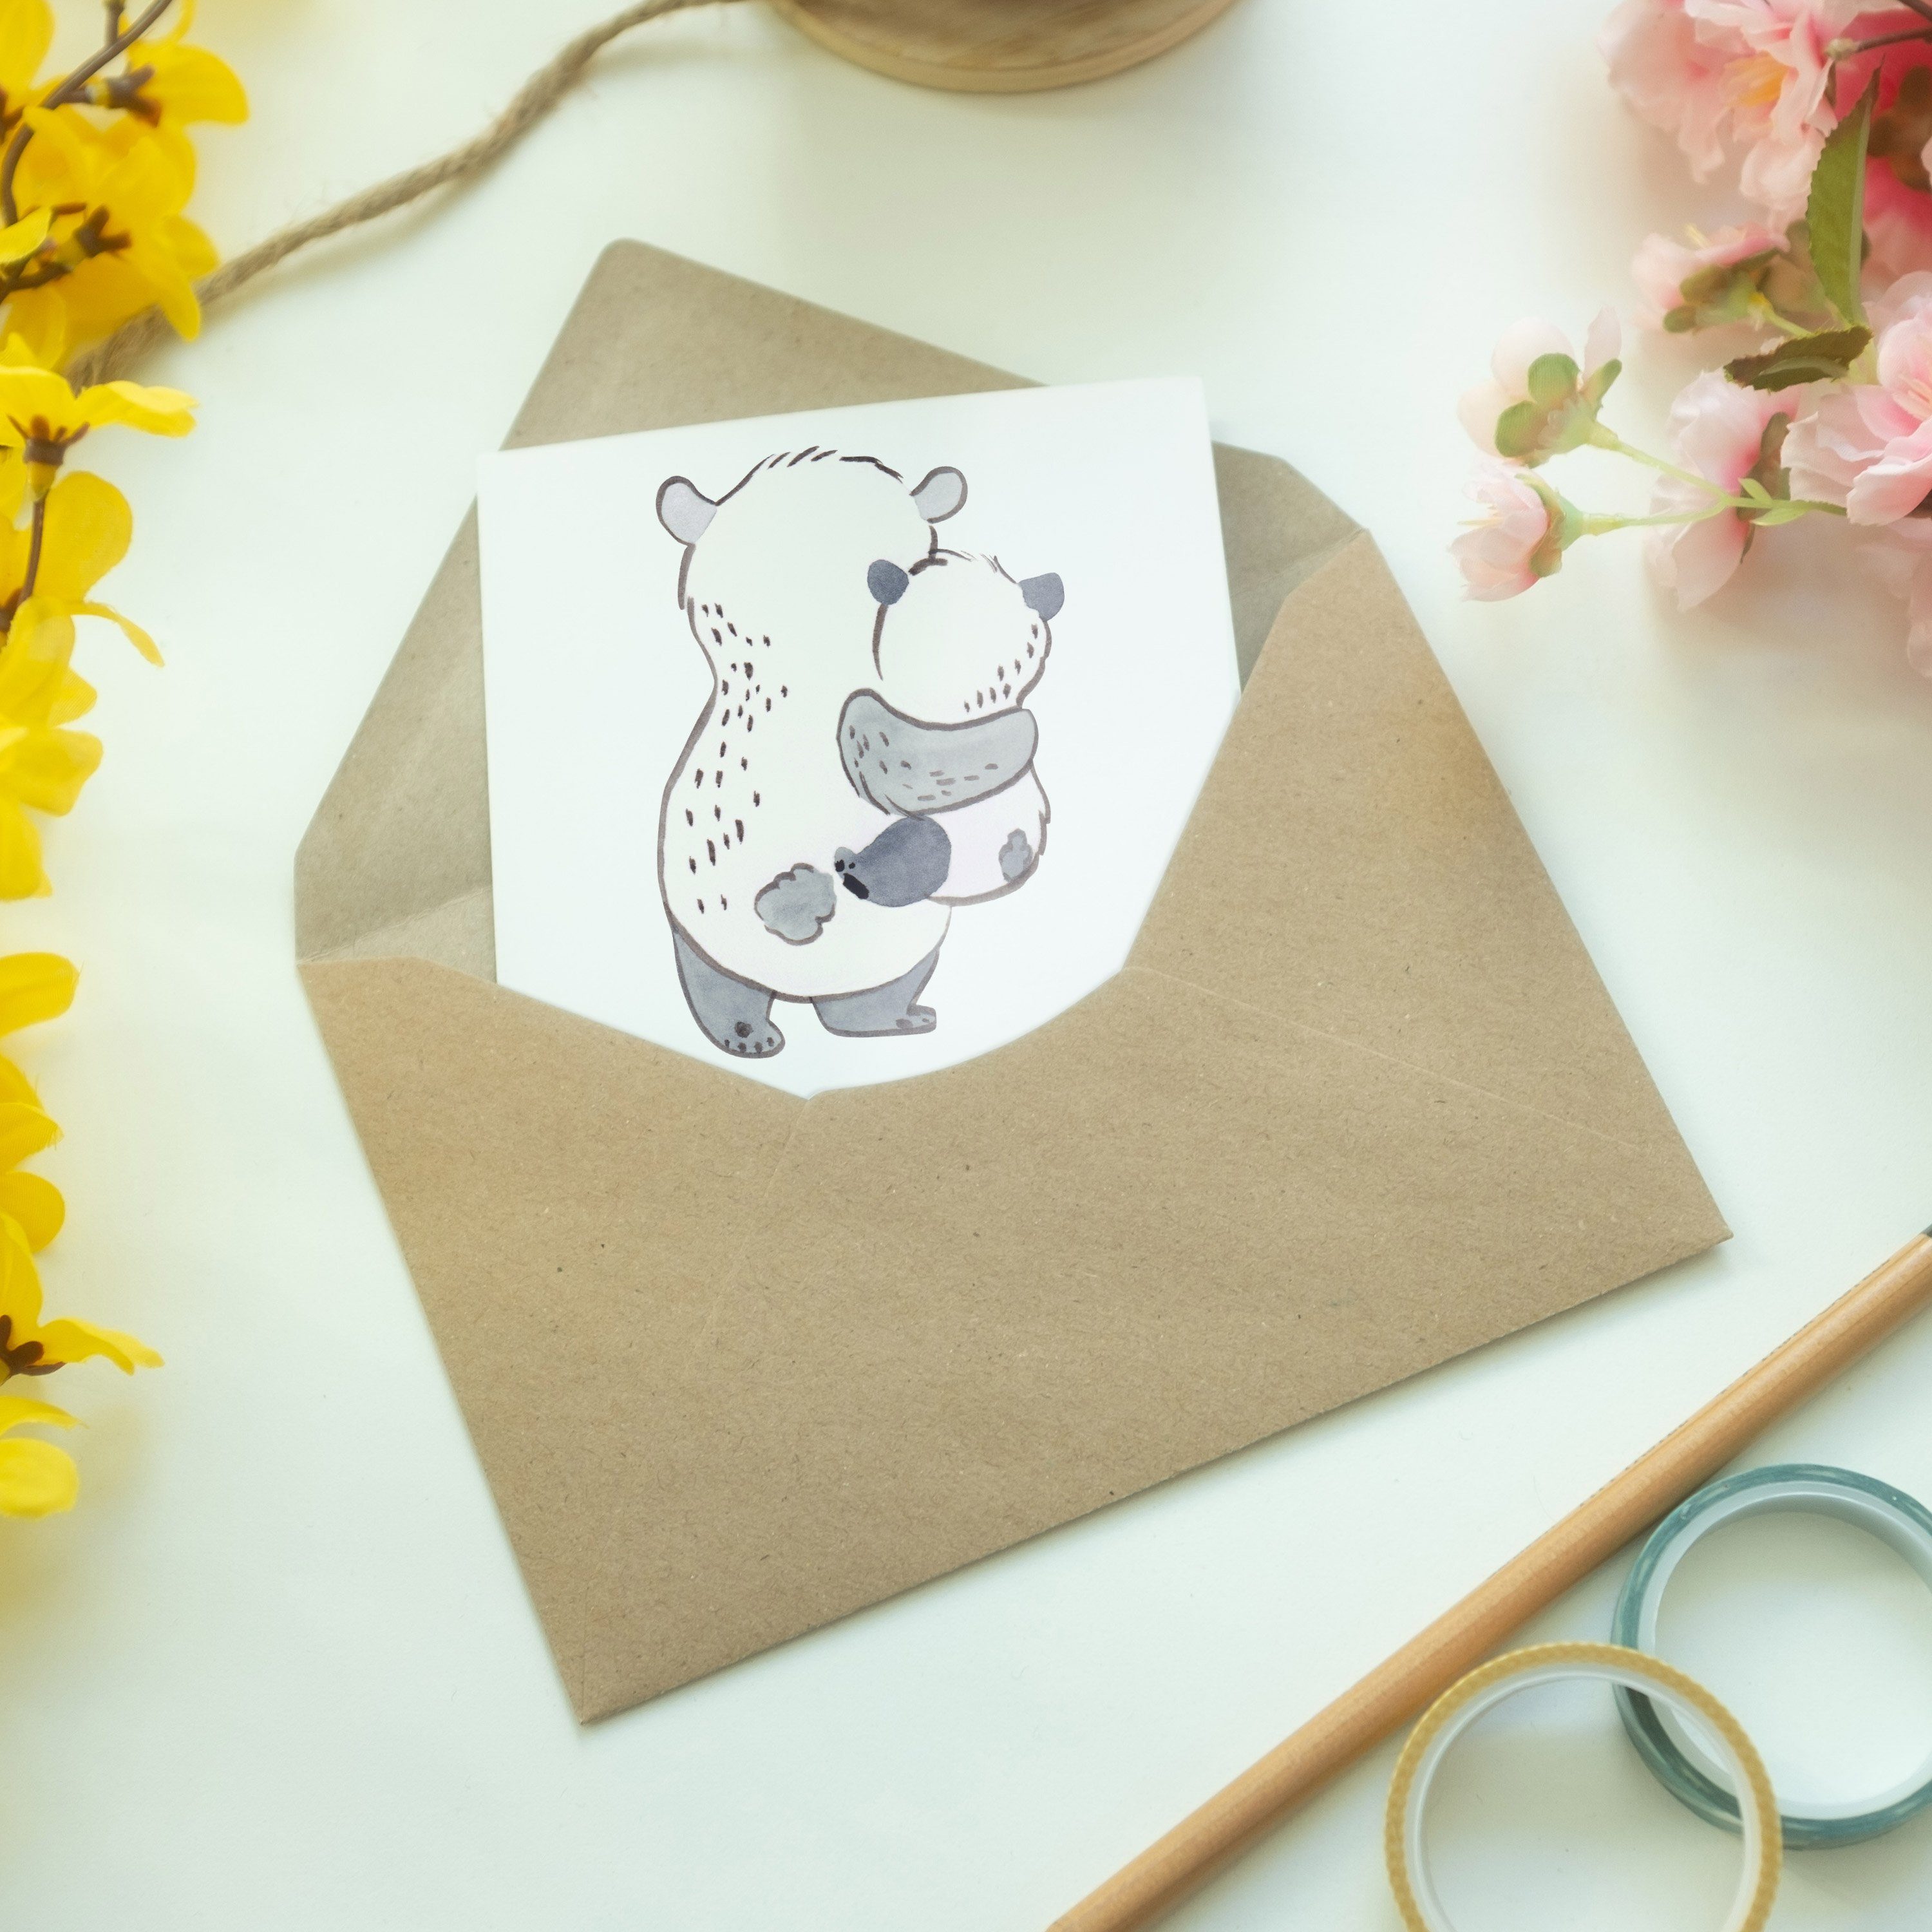 - Welt Geschenk, Grußkarte Panda Bestes Patenkind Weiß & Geburtstagsgeschen der Mr. Mrs. - Panda